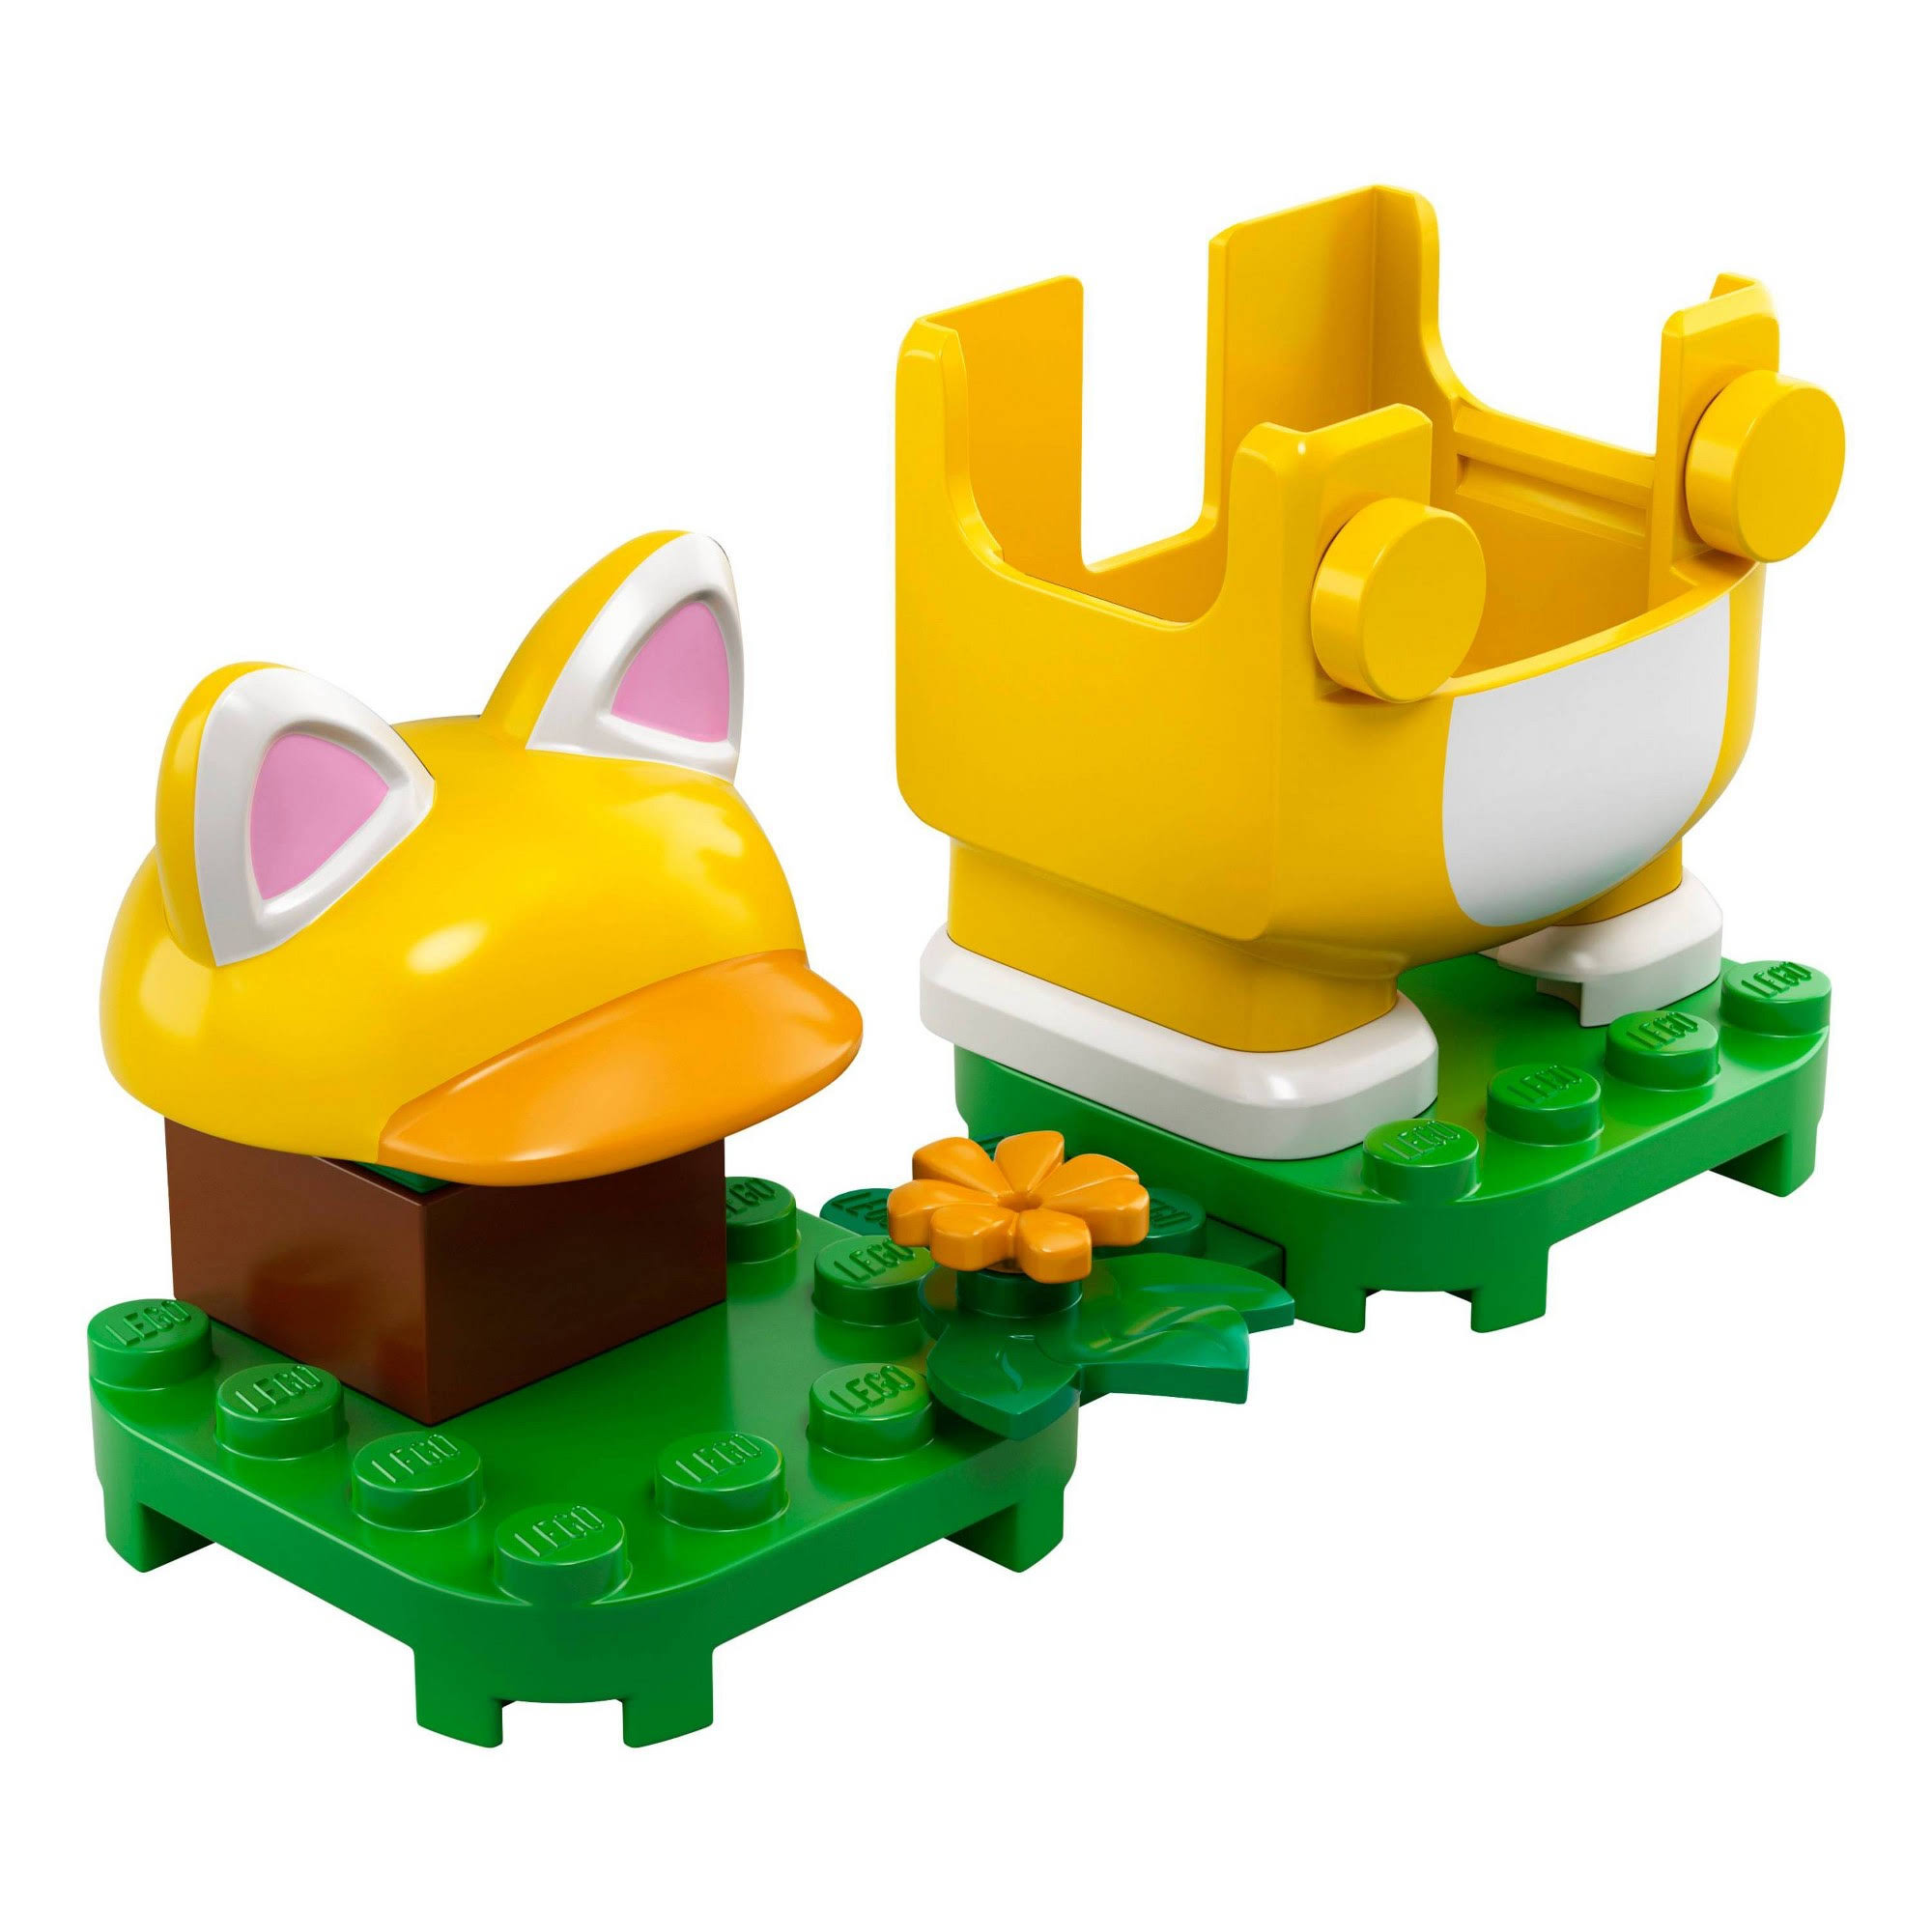 Lego Toy, Cat Mario, Super Mario